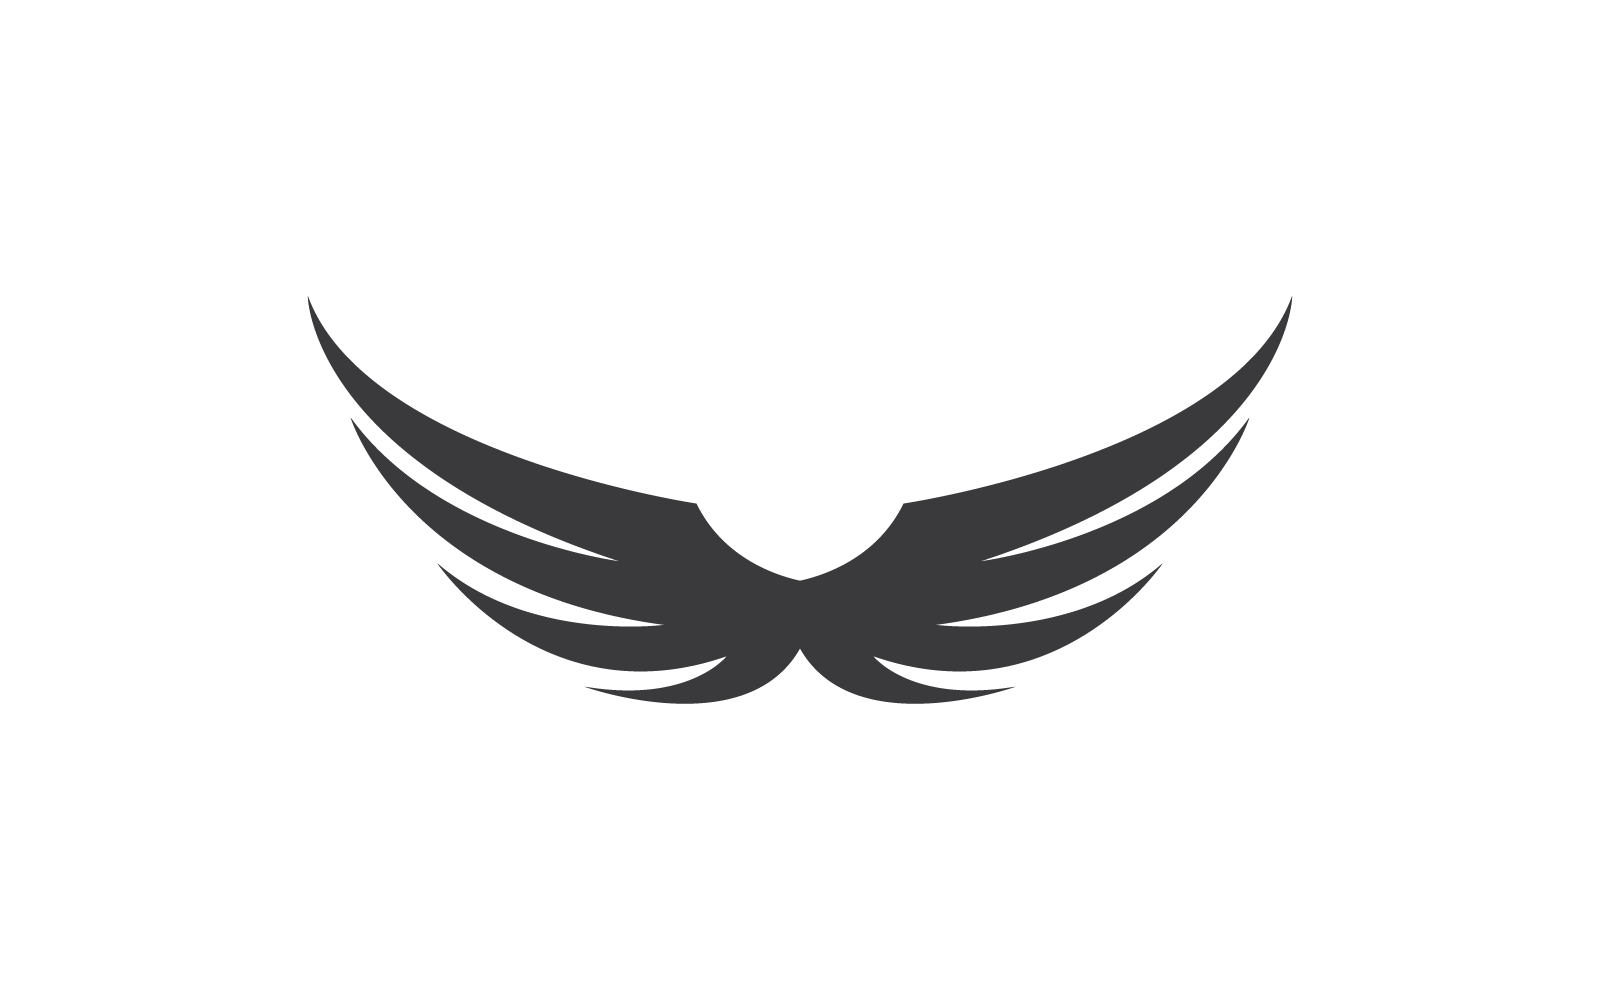 Conception plate de logo d'illustration d'aile